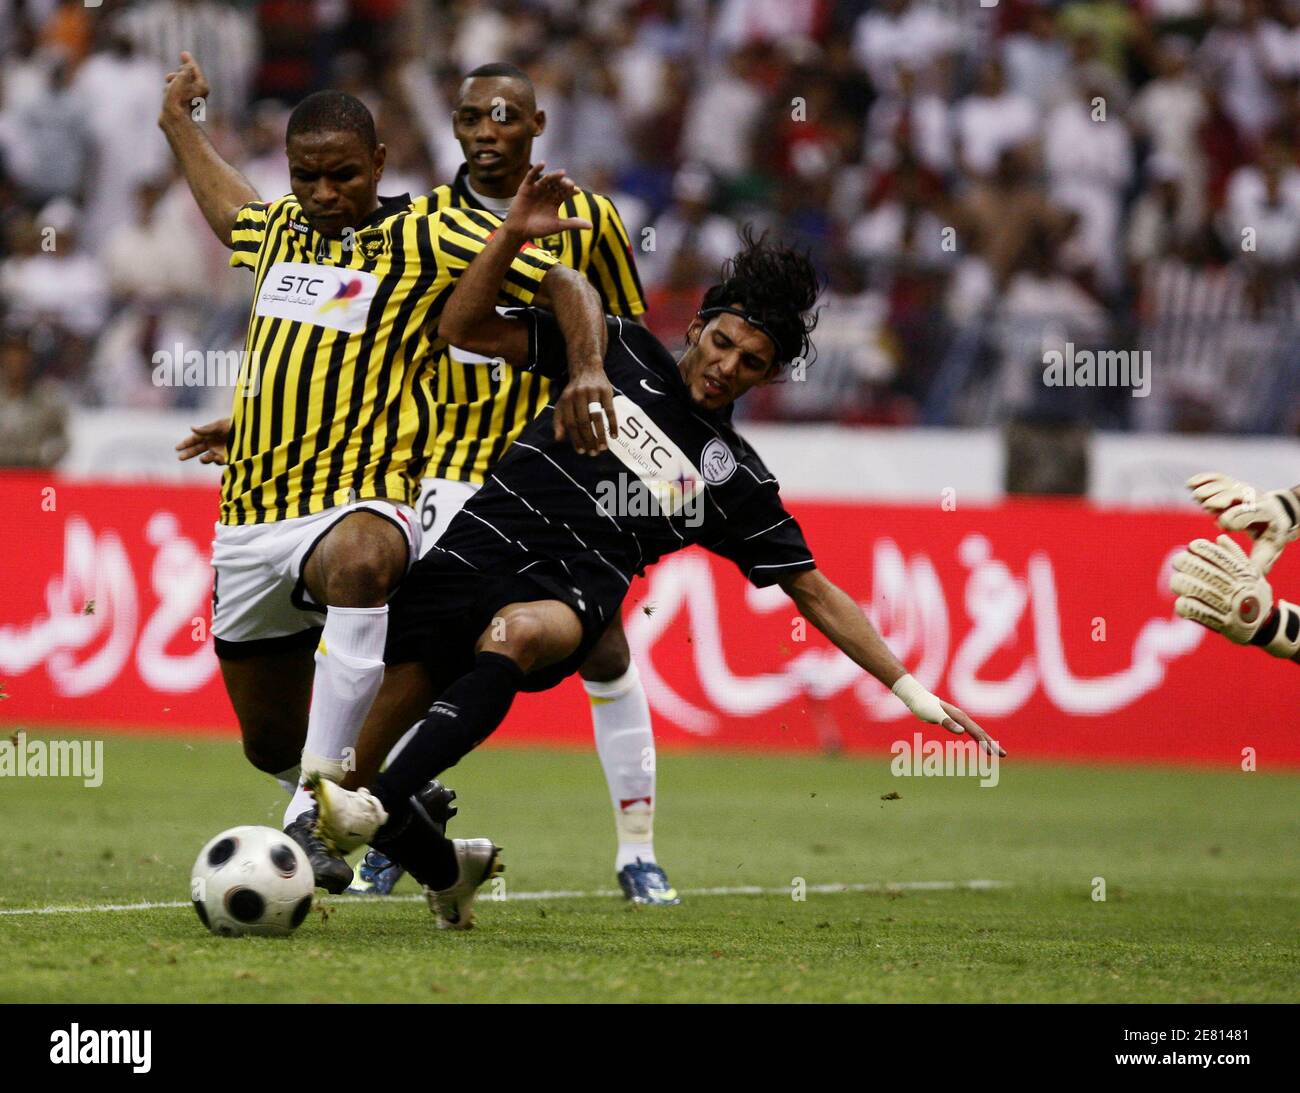 Al Shababab's Abed Al Aziz Suaran (R) kämpft mit Itihad's Reda Nakeer für den Ball während ihres Saudi King Cup-Finale Fußballspiel in Riad 15. Mai 2009. REUTERS/Fahad Shadeed (SAUDI-ARABISCHER FUSSBALL) Stockfoto